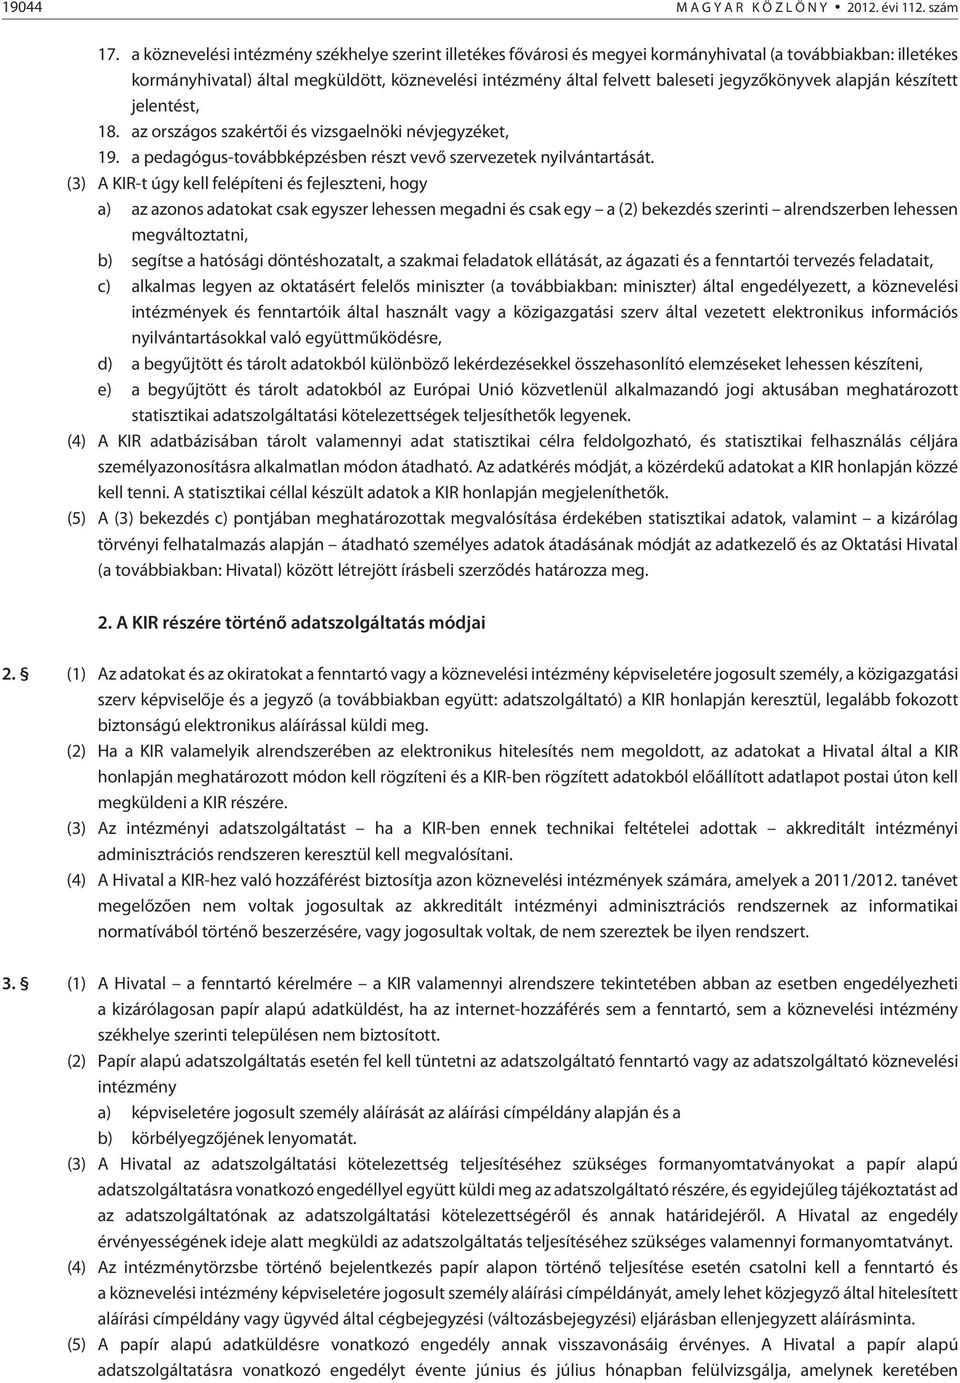 jegyzõkönyvek alapján készített jelentést, 18. az országos szakértõi és vizsgaelnöki névjegyzéket, 19. a pedagógus-továbbképzésben részt vevõ szervezetek nyilvántartását.